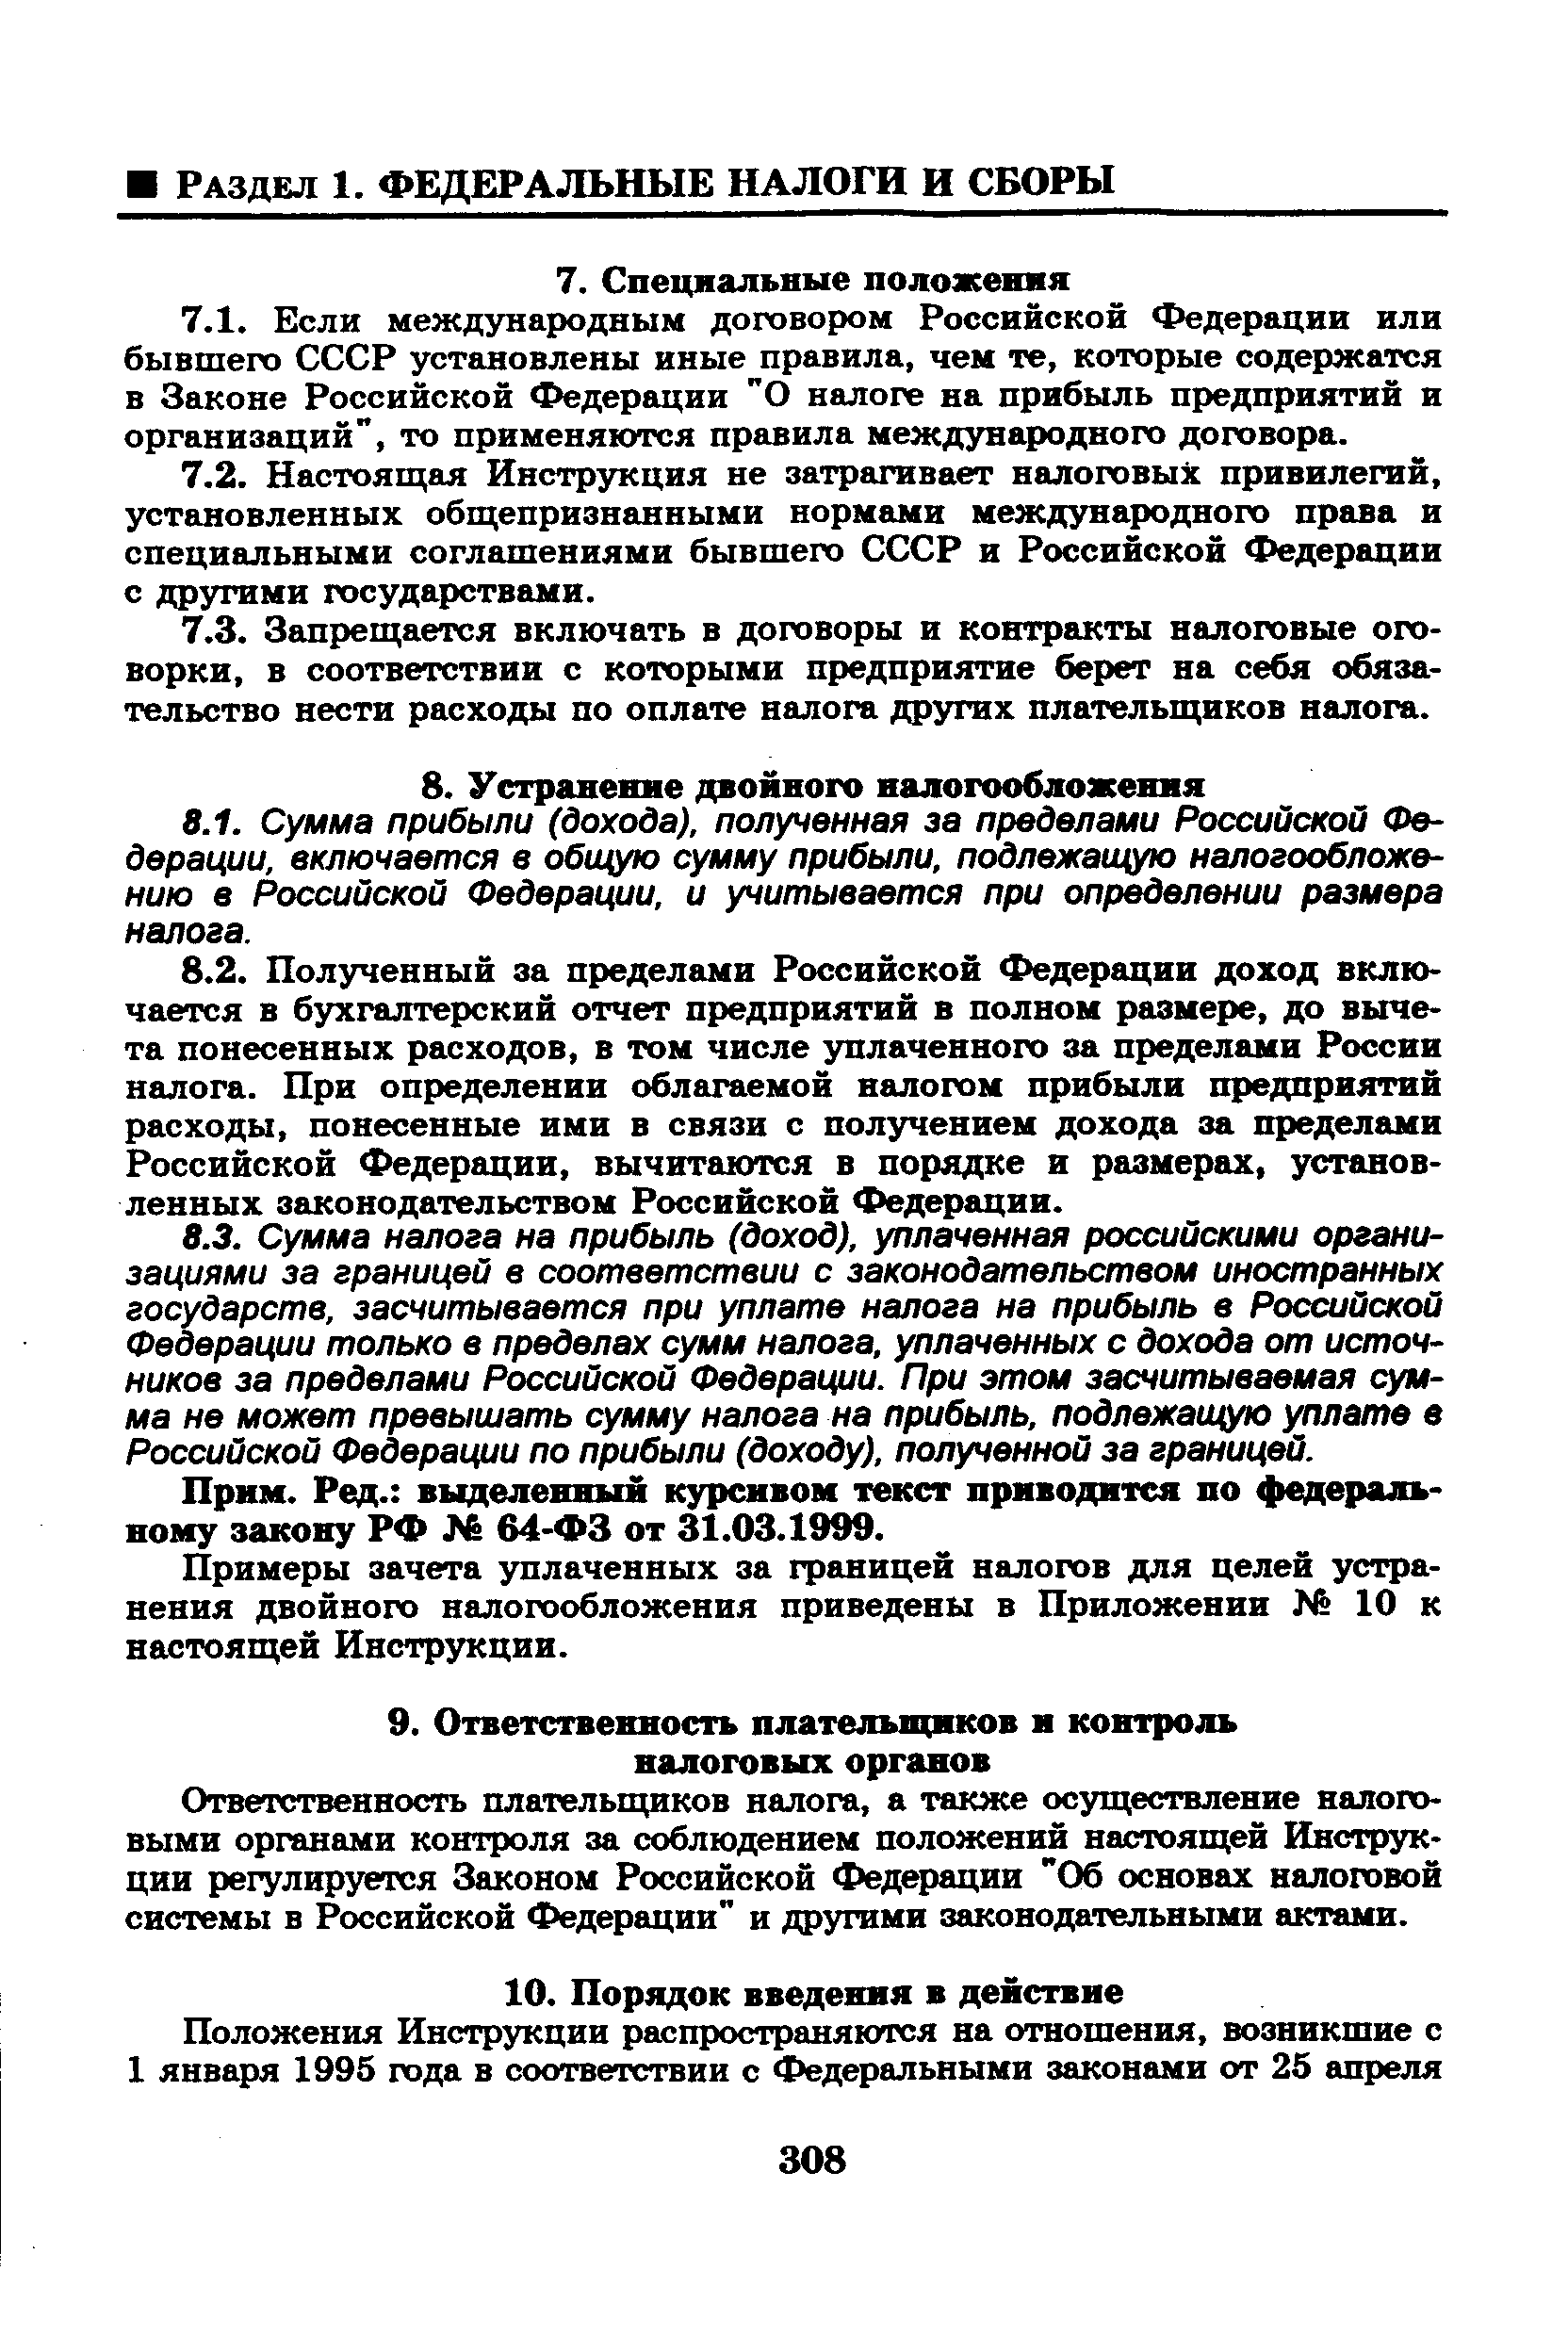 выделенный курсивом текст приводится по федеральному закону РФ 64-ФЗ от 31.03.1999.
